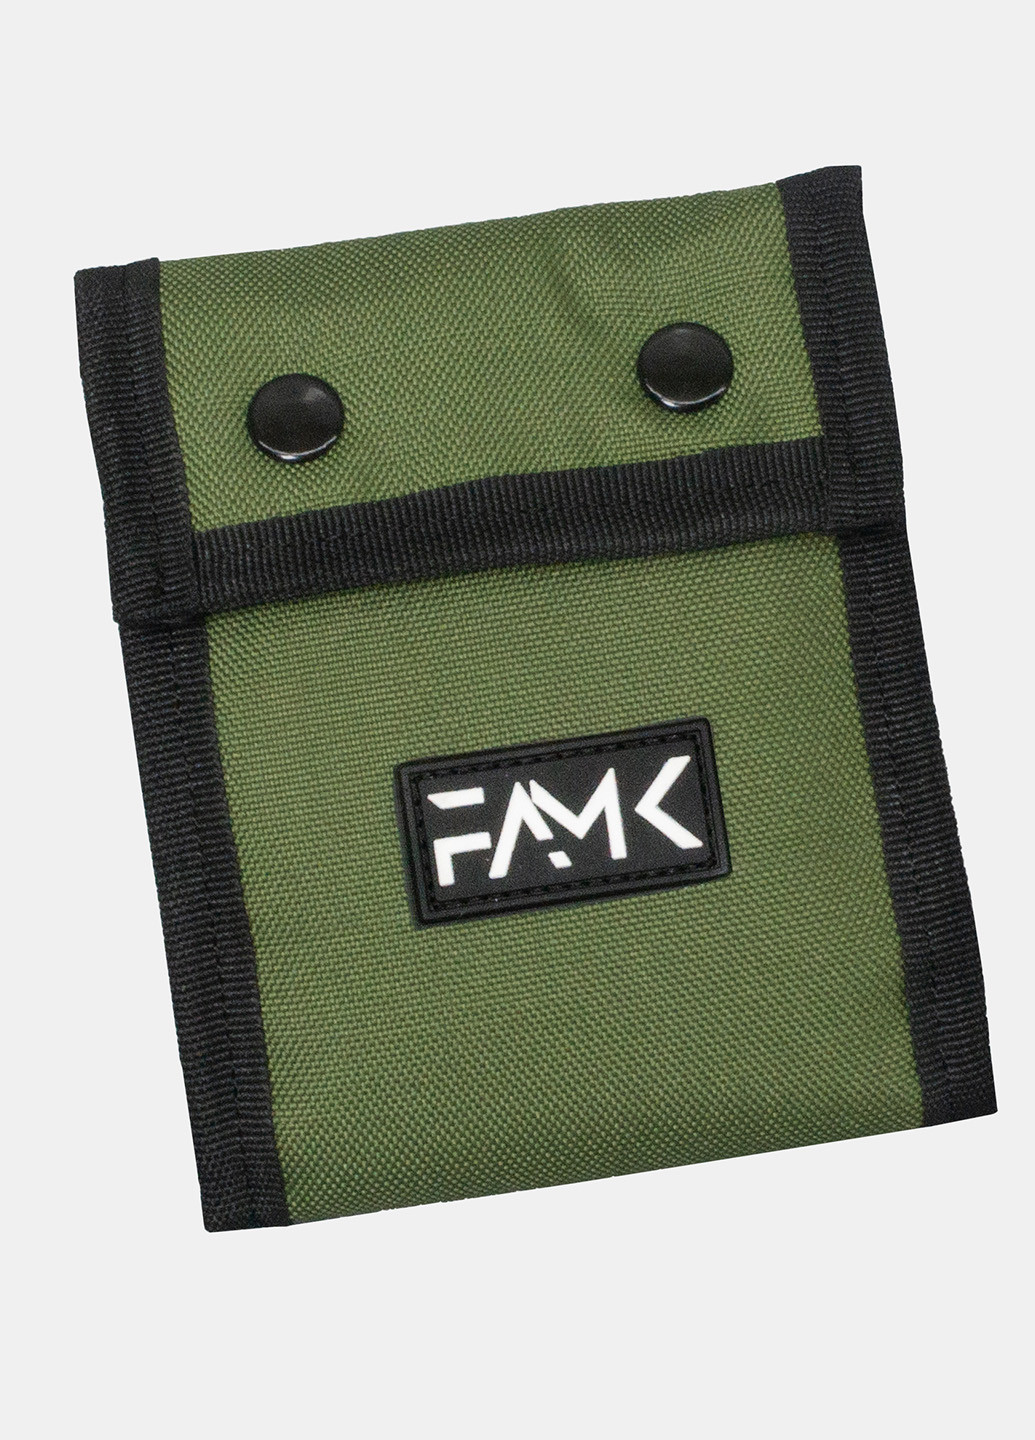 Кошелек на кнопках Tri-fold хаки Famk (254661182)